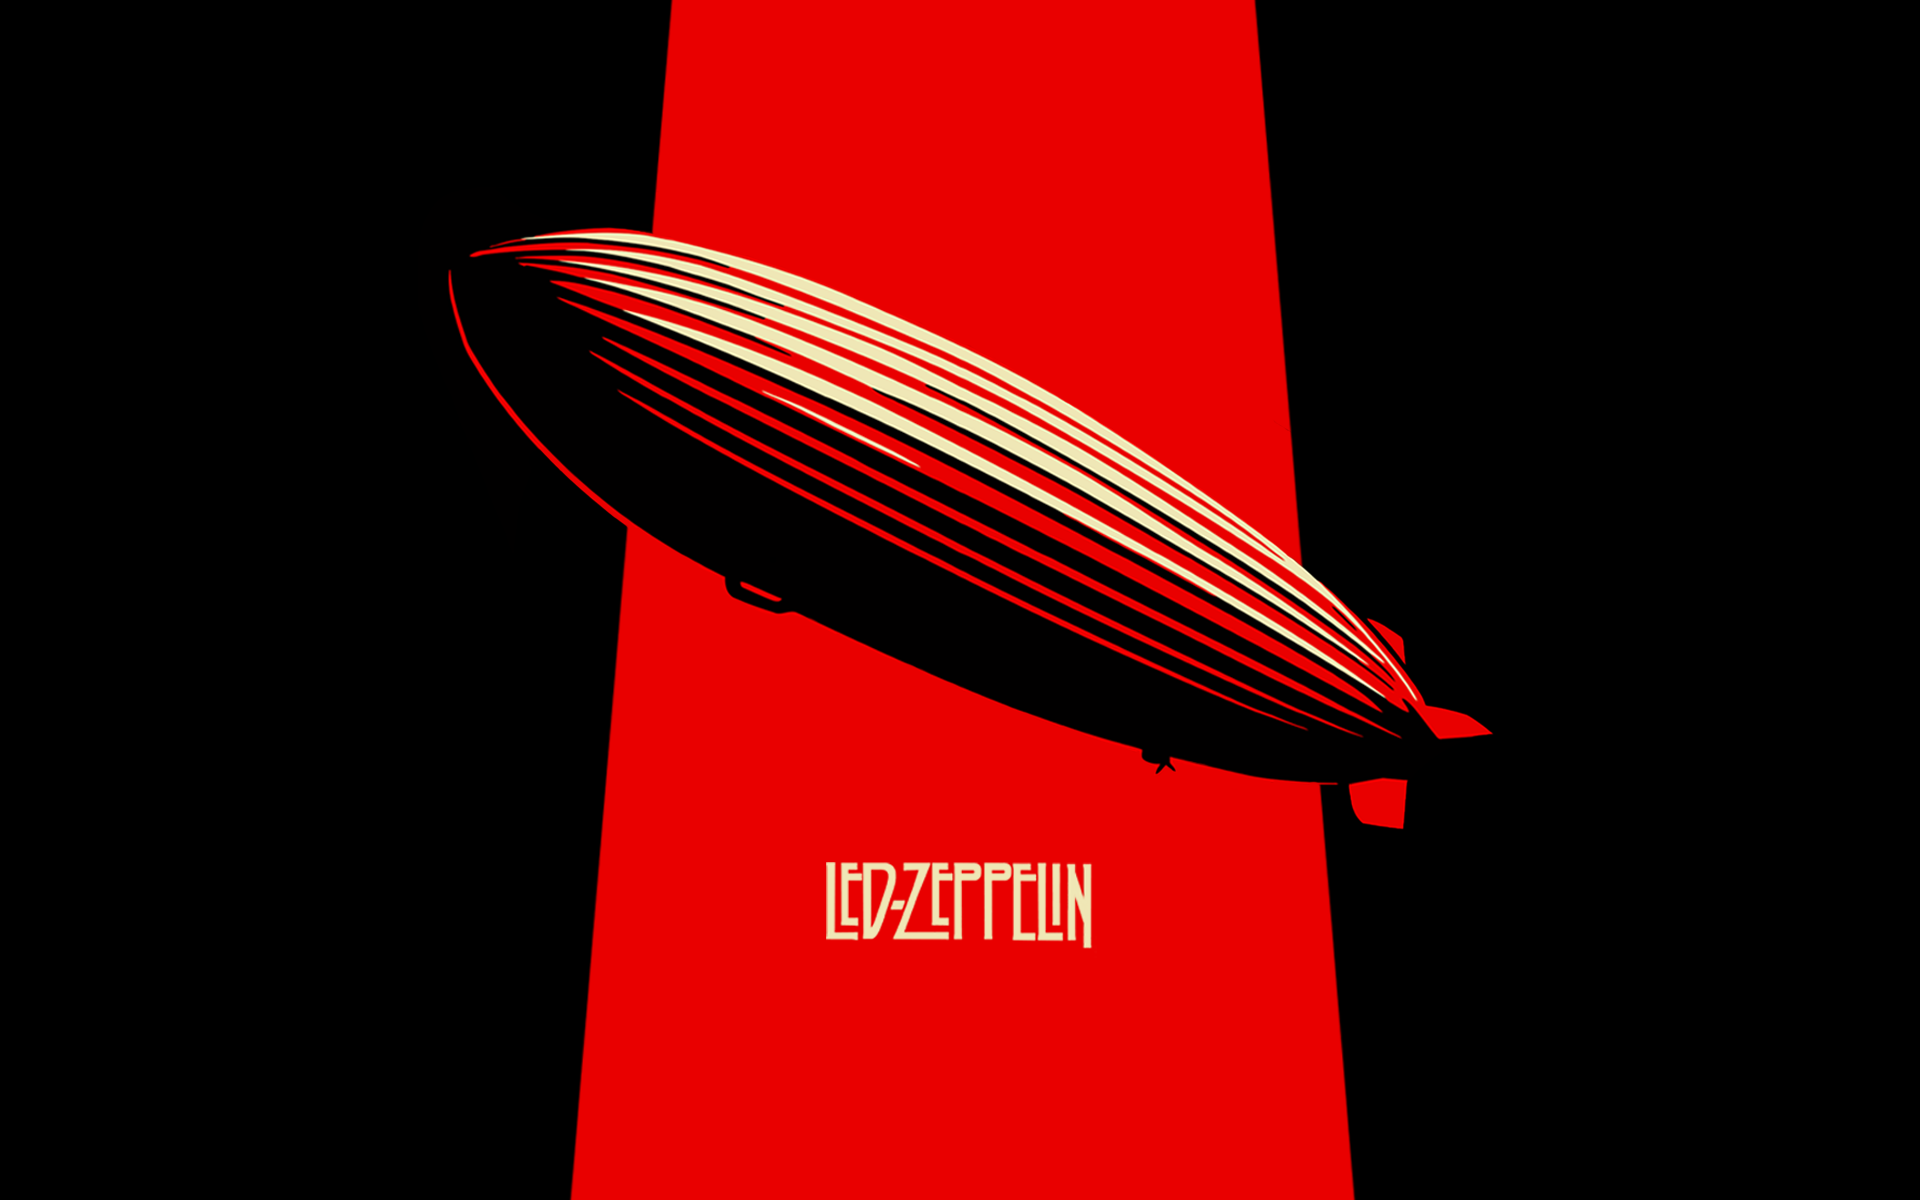 fond d'écran led zeppelin,rouge,police de caractère,planche à roulette,longboard,conception graphique